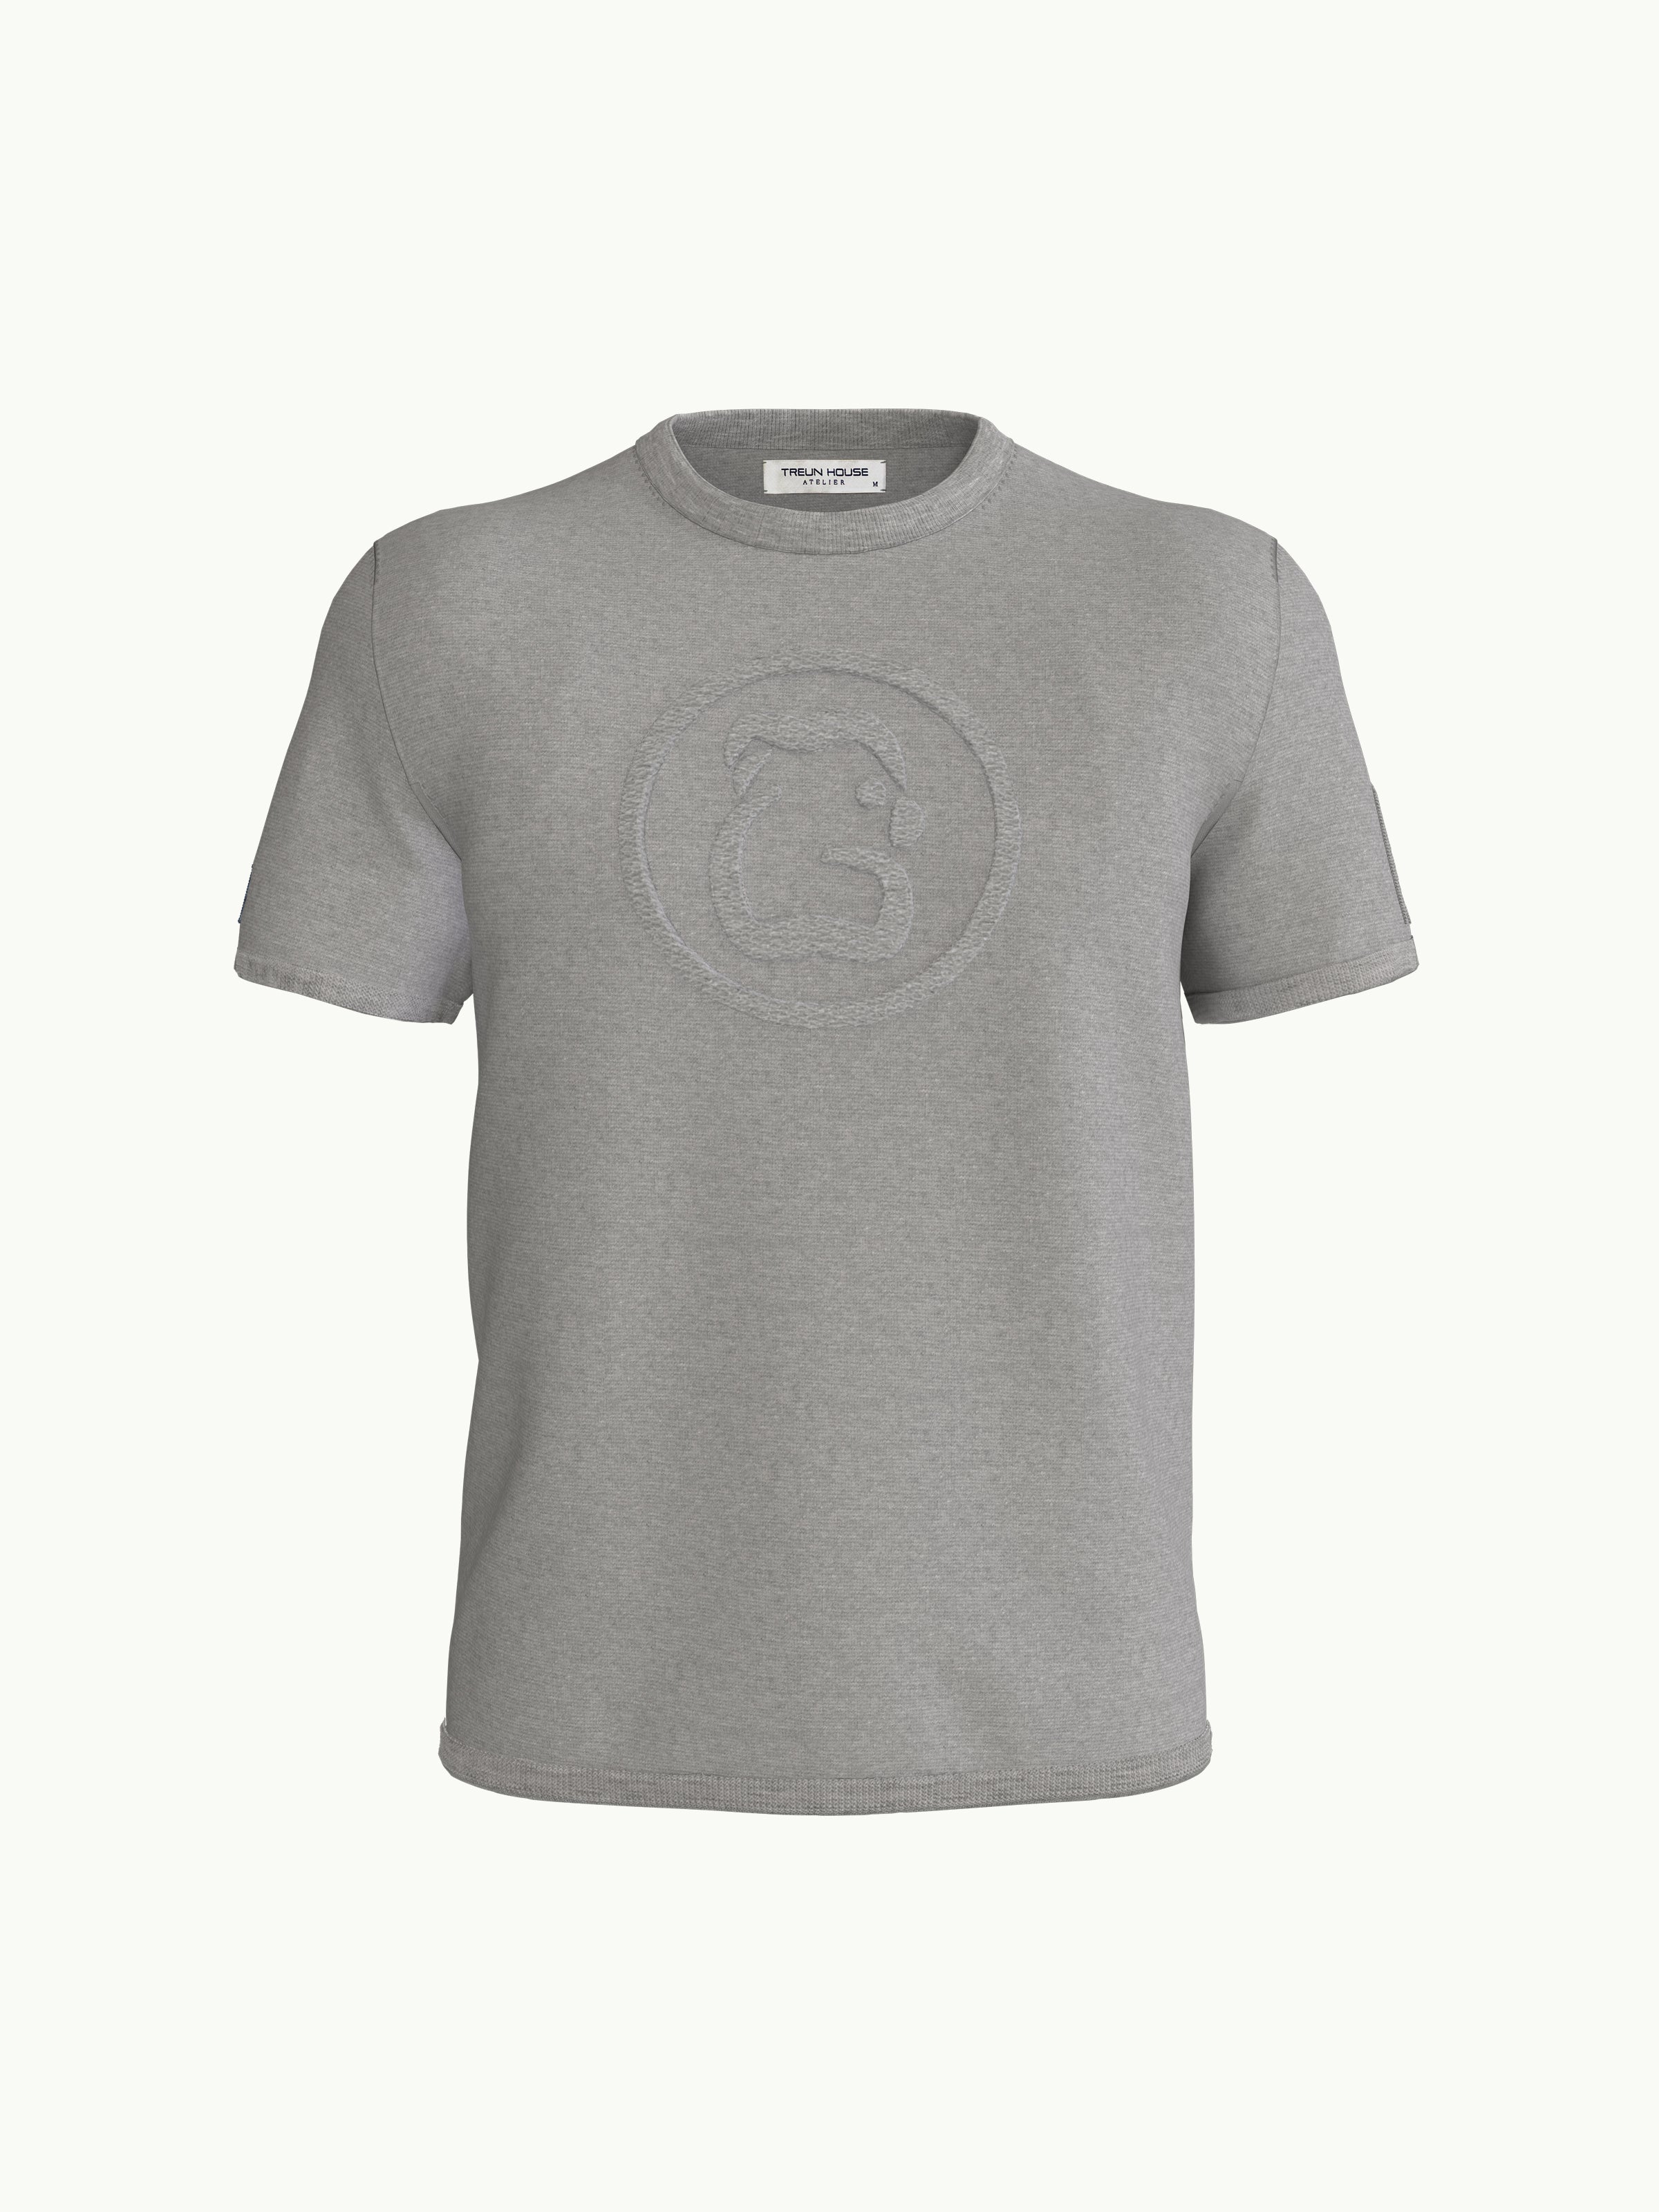 Men's T-Shirt - Parrot Light Grey